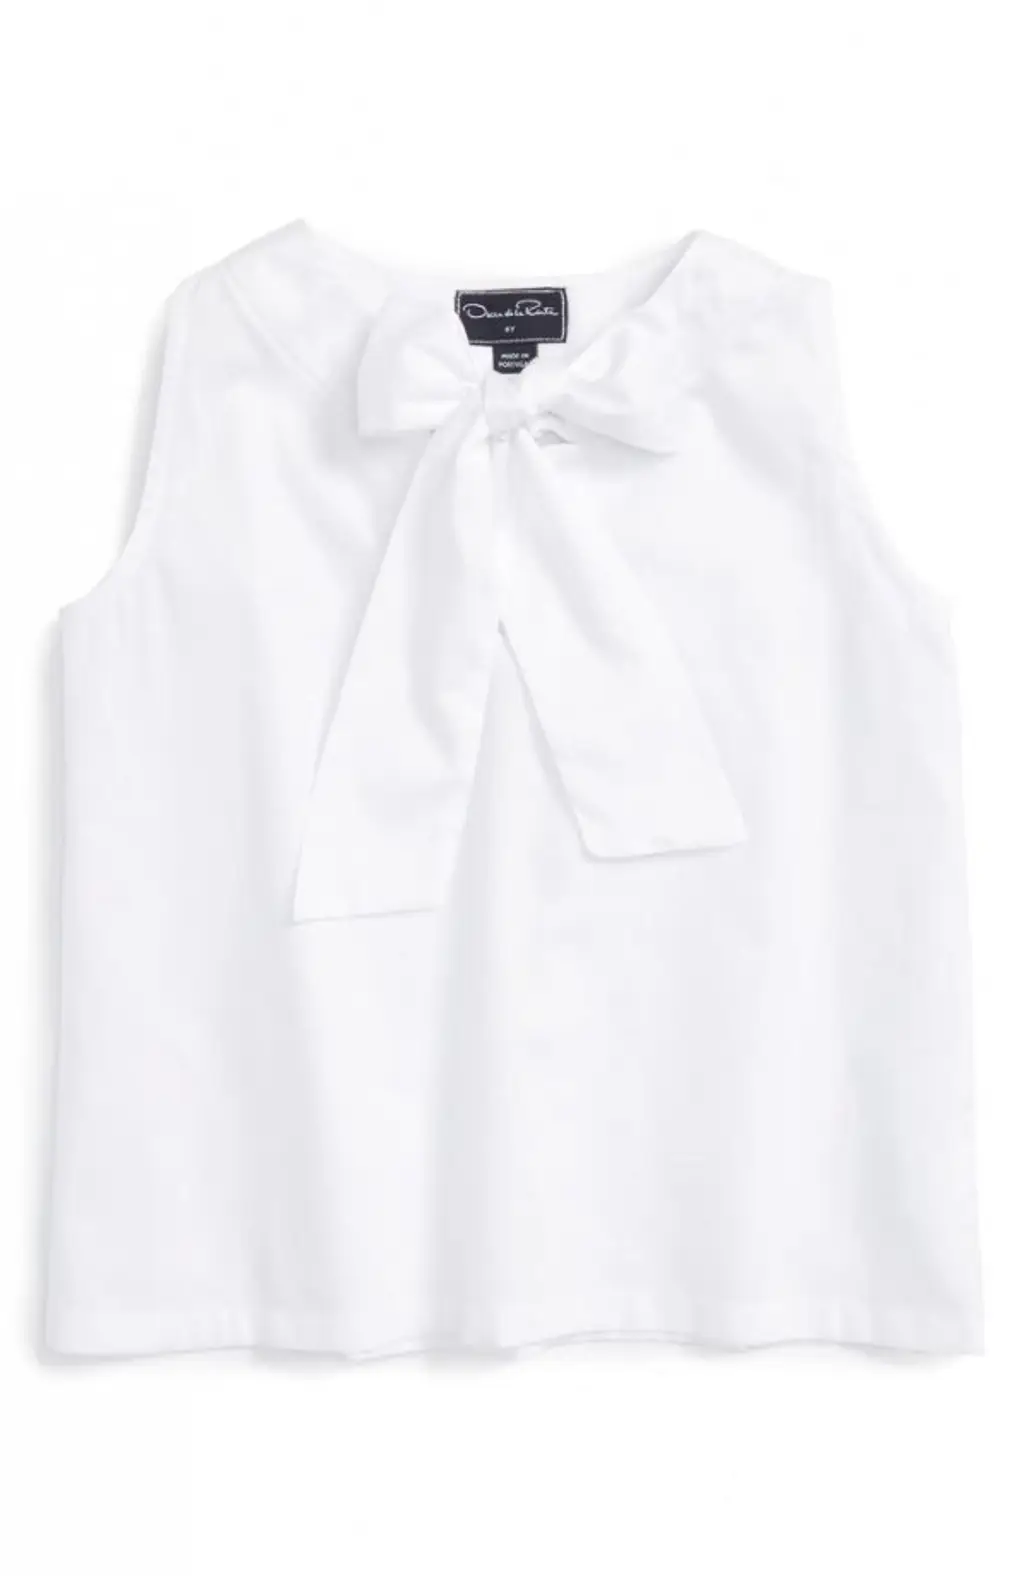 clothing,white,sleeve,t shirt,blouse,